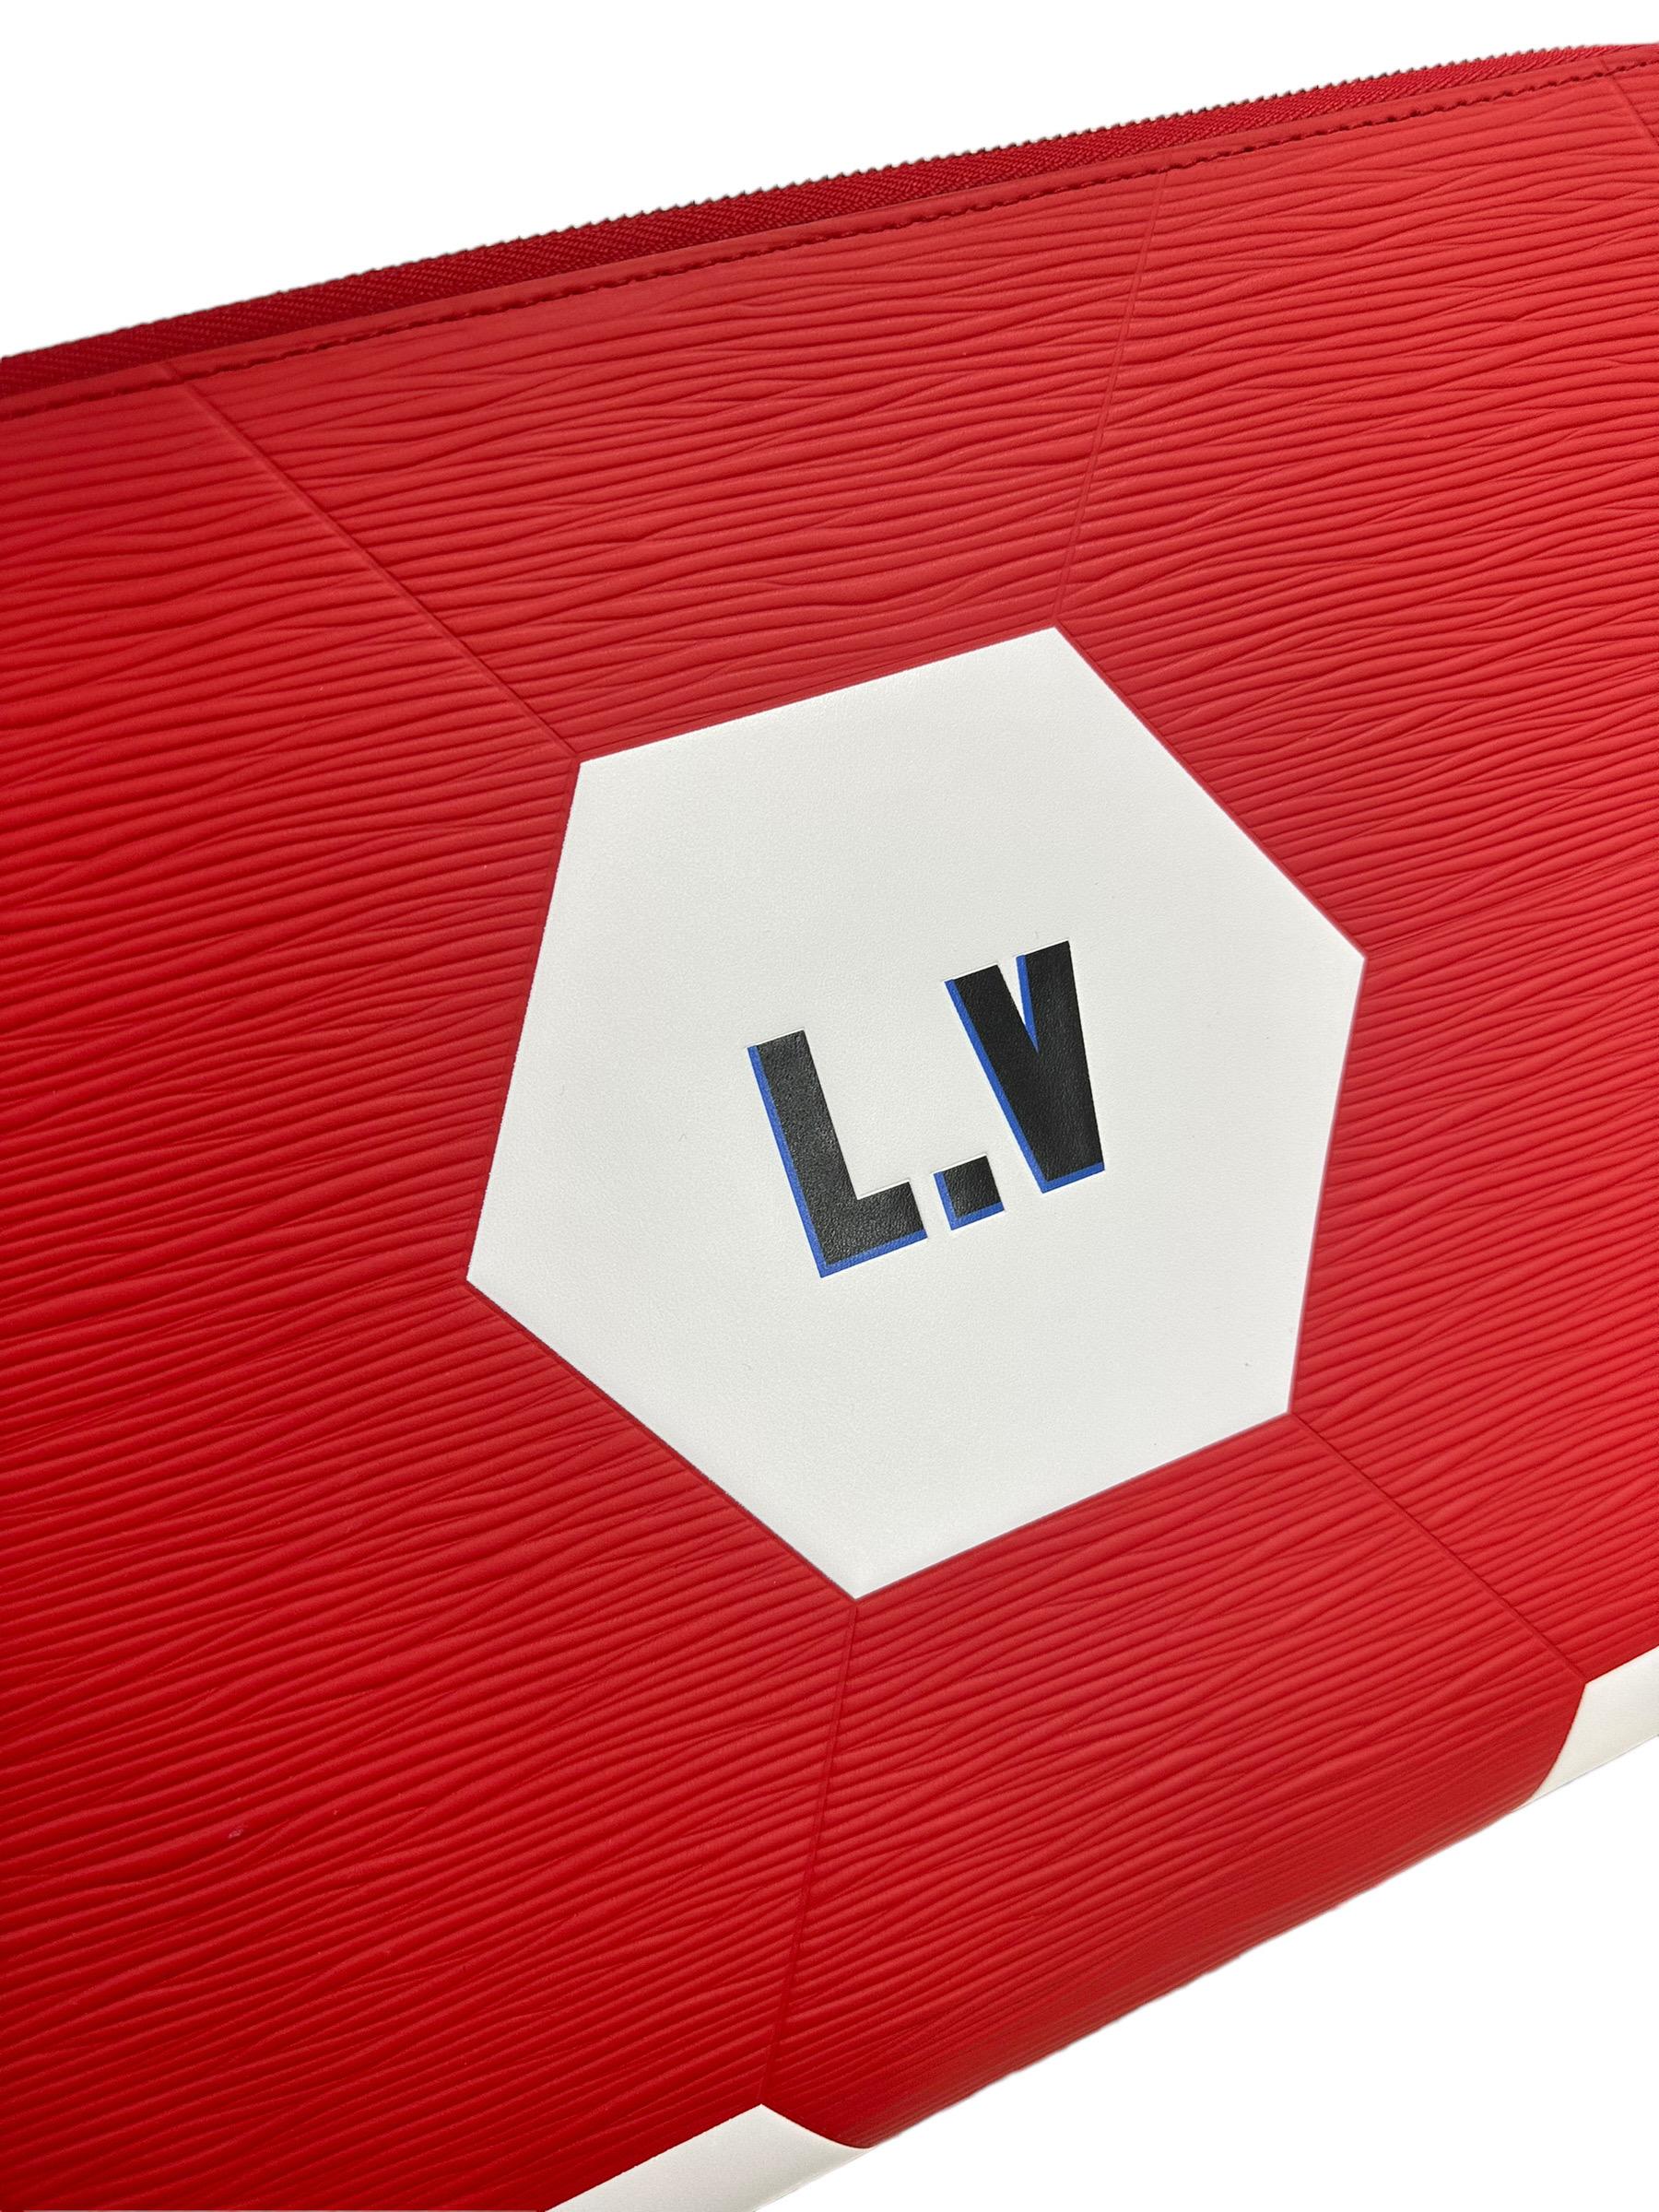 Clutch firmata Louis Vuitton, modello Jour, misura GM, in edizione limitata FIFA World Cup Russia 2018, realizzata in pelle epi rossa con inserti in pelle liscia bianca e logo nero. Dotata di una chiusura con zip, internamente rivestita in tela